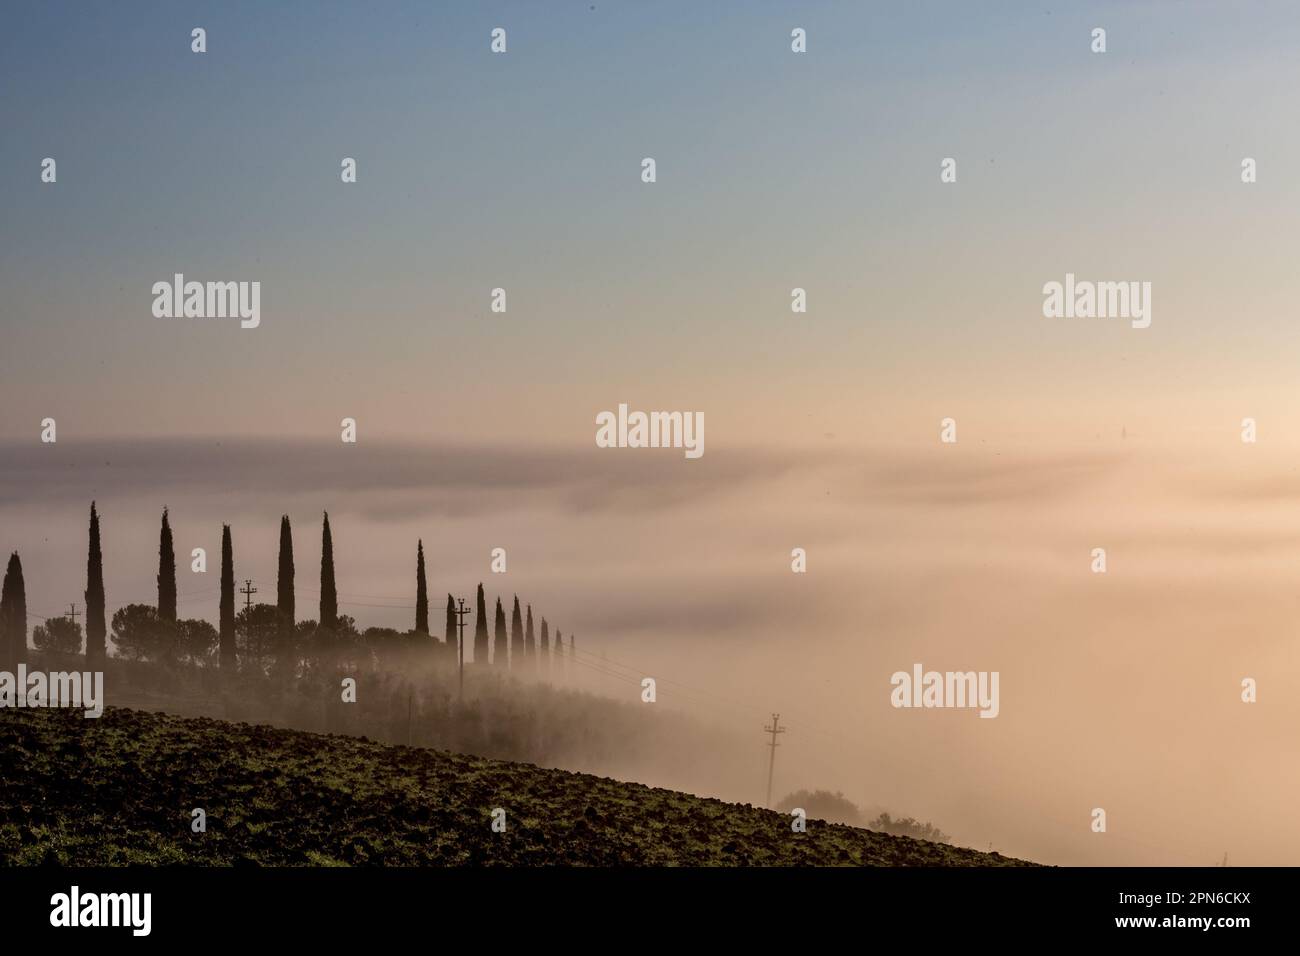 Malerischer nebeliger Morgen mit dickem Nebel über dem Tal in der Toskana, Italien. Eine Reihe Zypressen lässt alle wie ein Märchen aussehen. Stockfoto